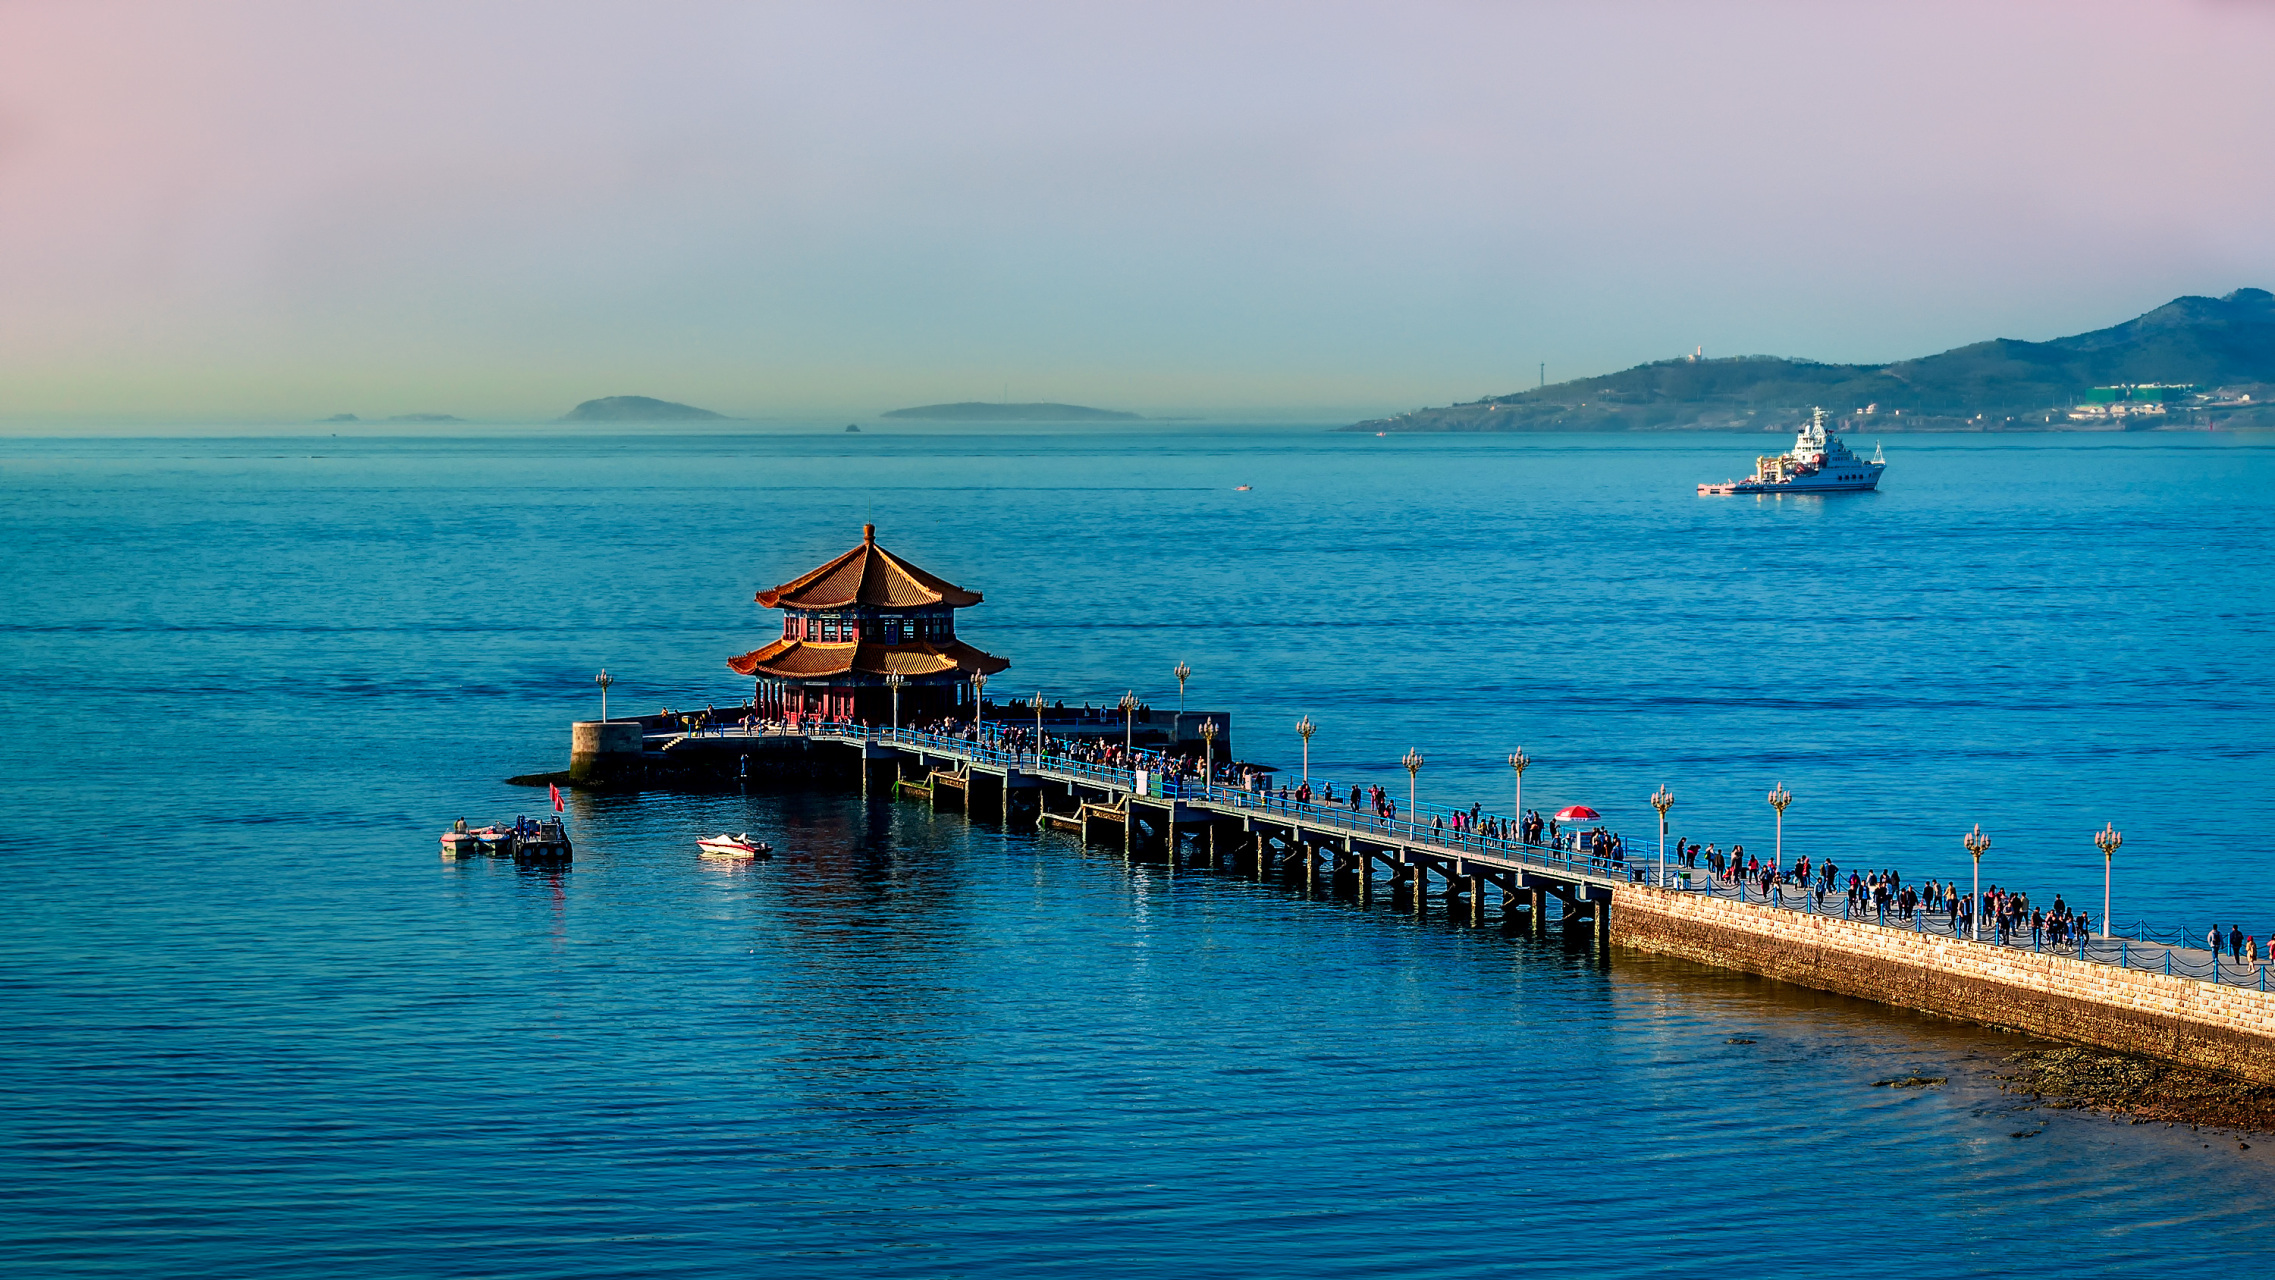 栈桥是青岛的标志性建筑之一,是一座连接海上游乐场和浮山湾的大型